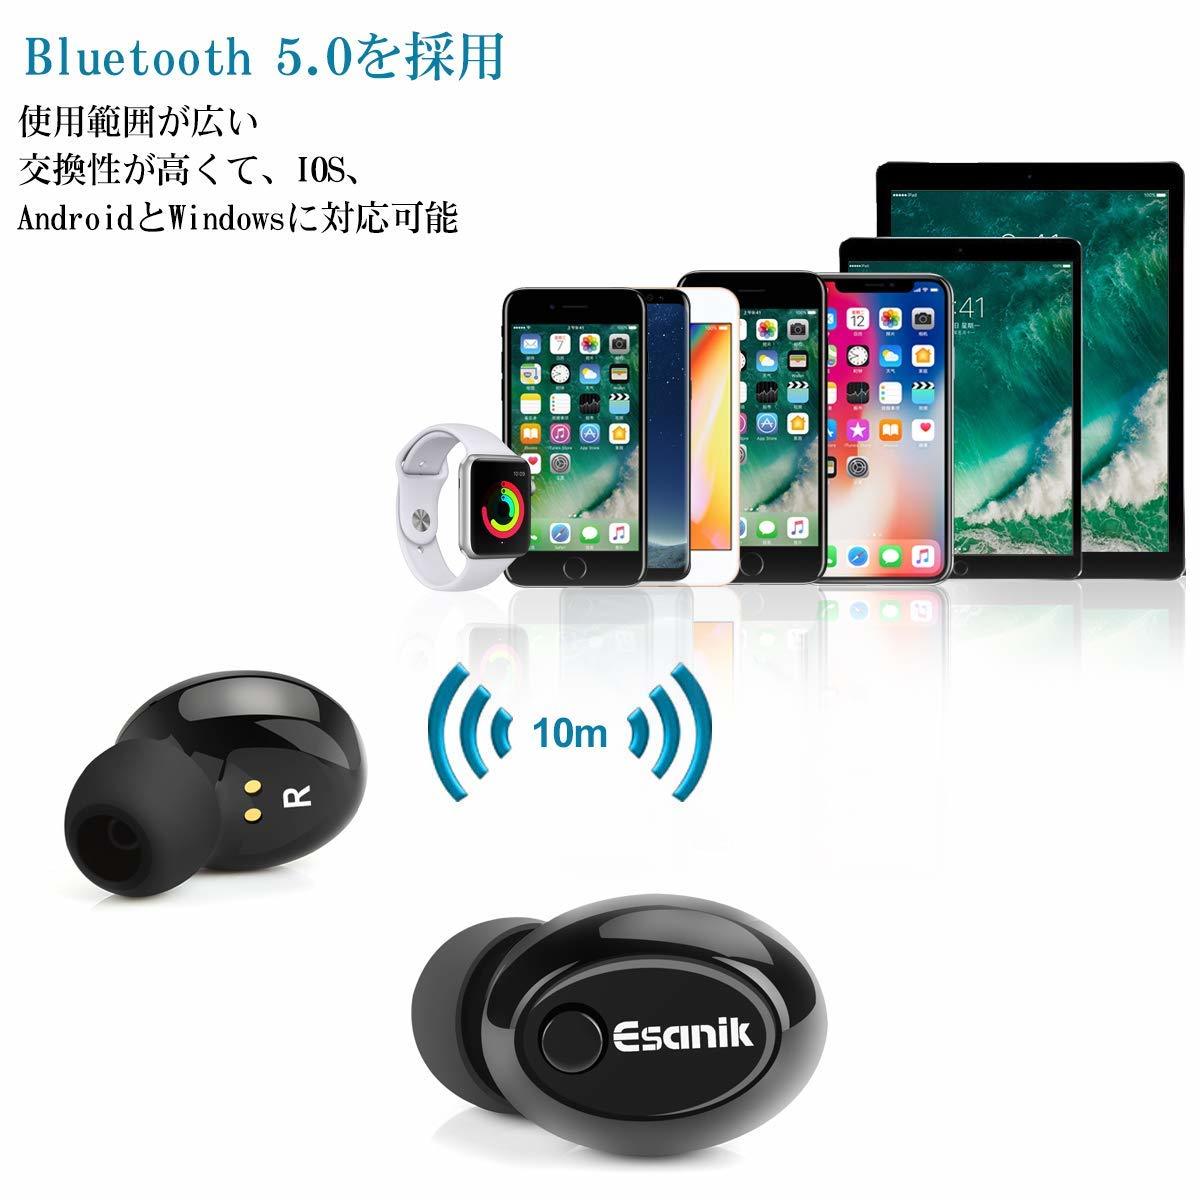  原文:[Bluetooth5.0進化版] Bluetooth イヤホン 完全 ワイヤレス イヤホン ブルートゥース 自動 ペアリング Hi-Fi 高音質 マイク内蔵